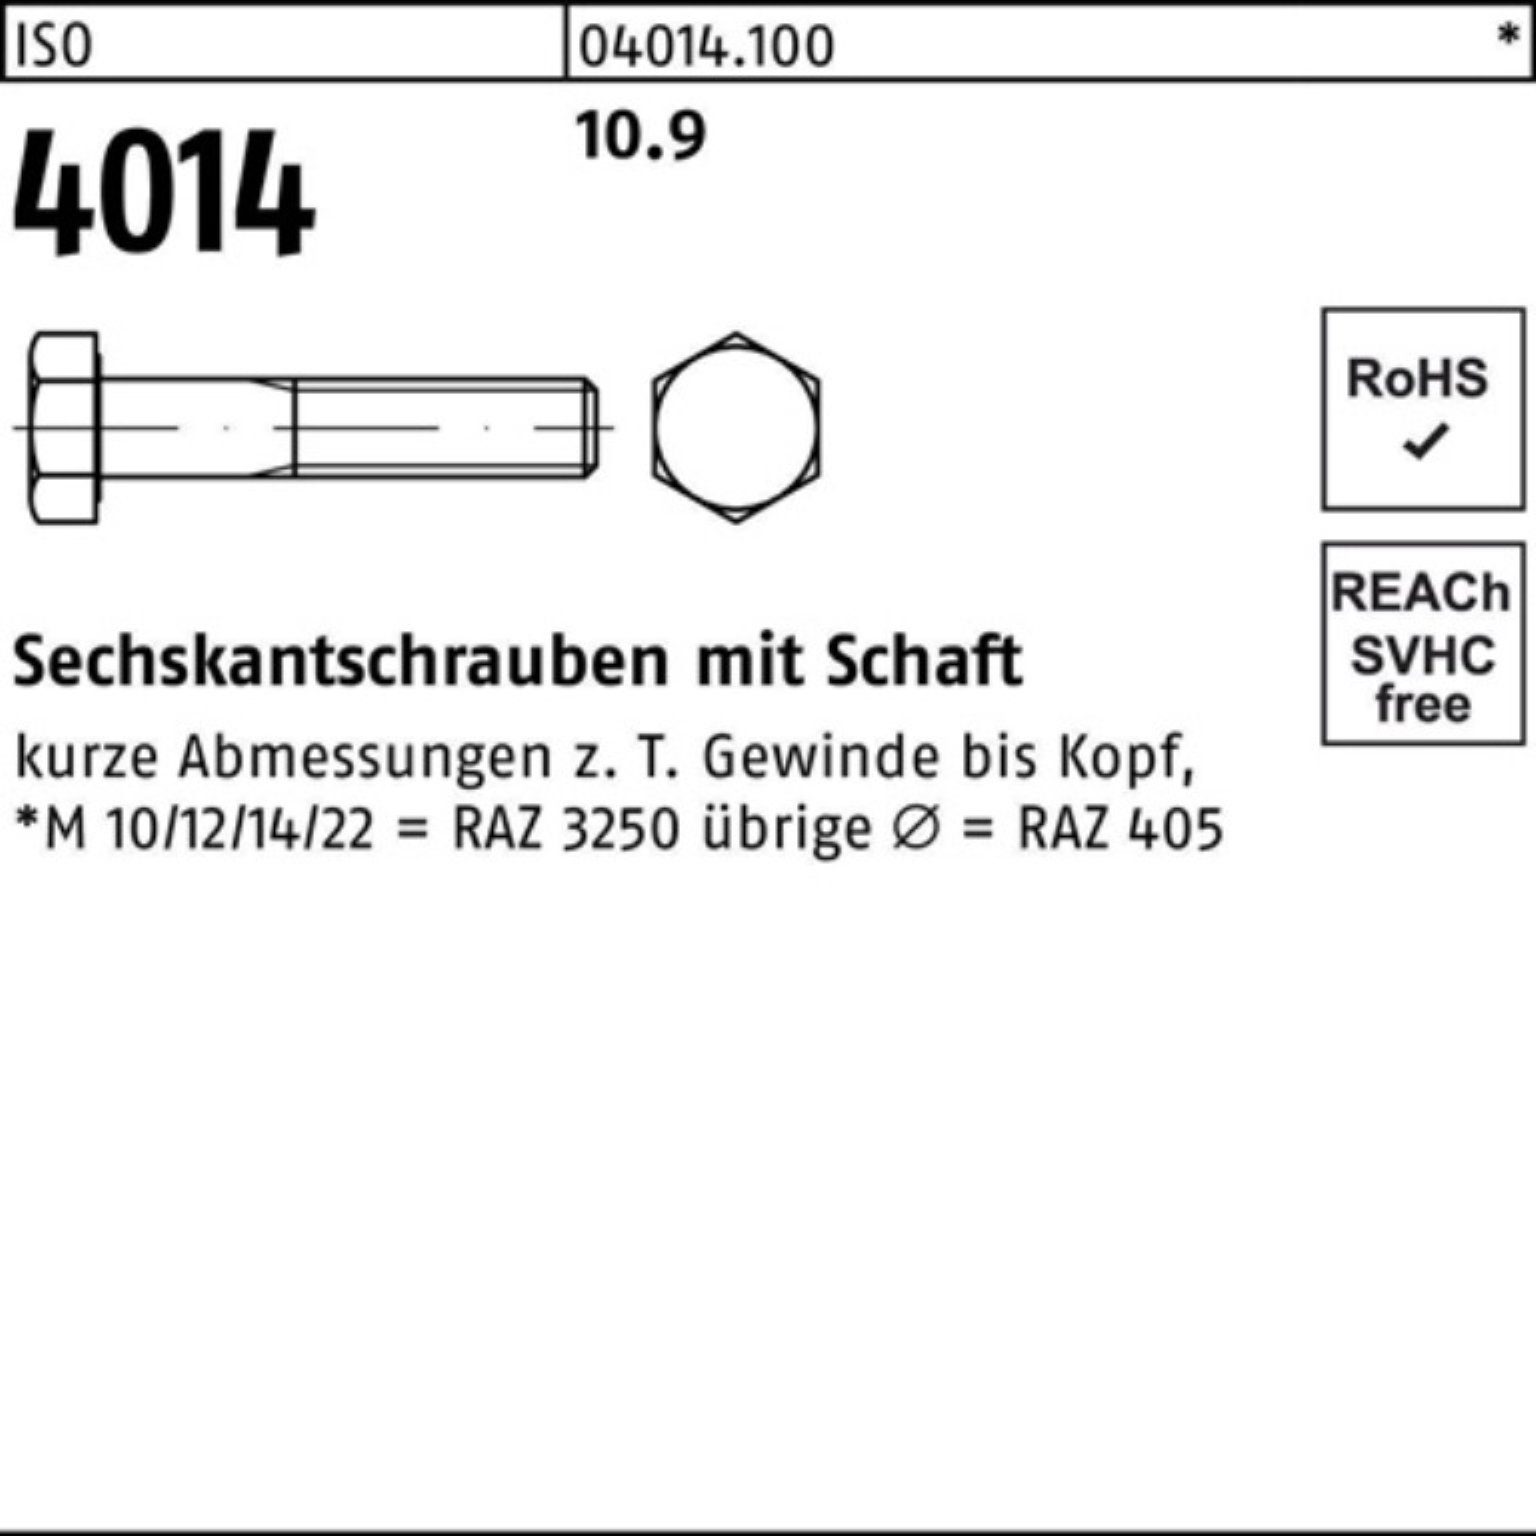 IS 100er Sechskantschraube Schaft 330 Stück Bufab 1 4014 10.9 ISO Pack M20x Sechskantschraube